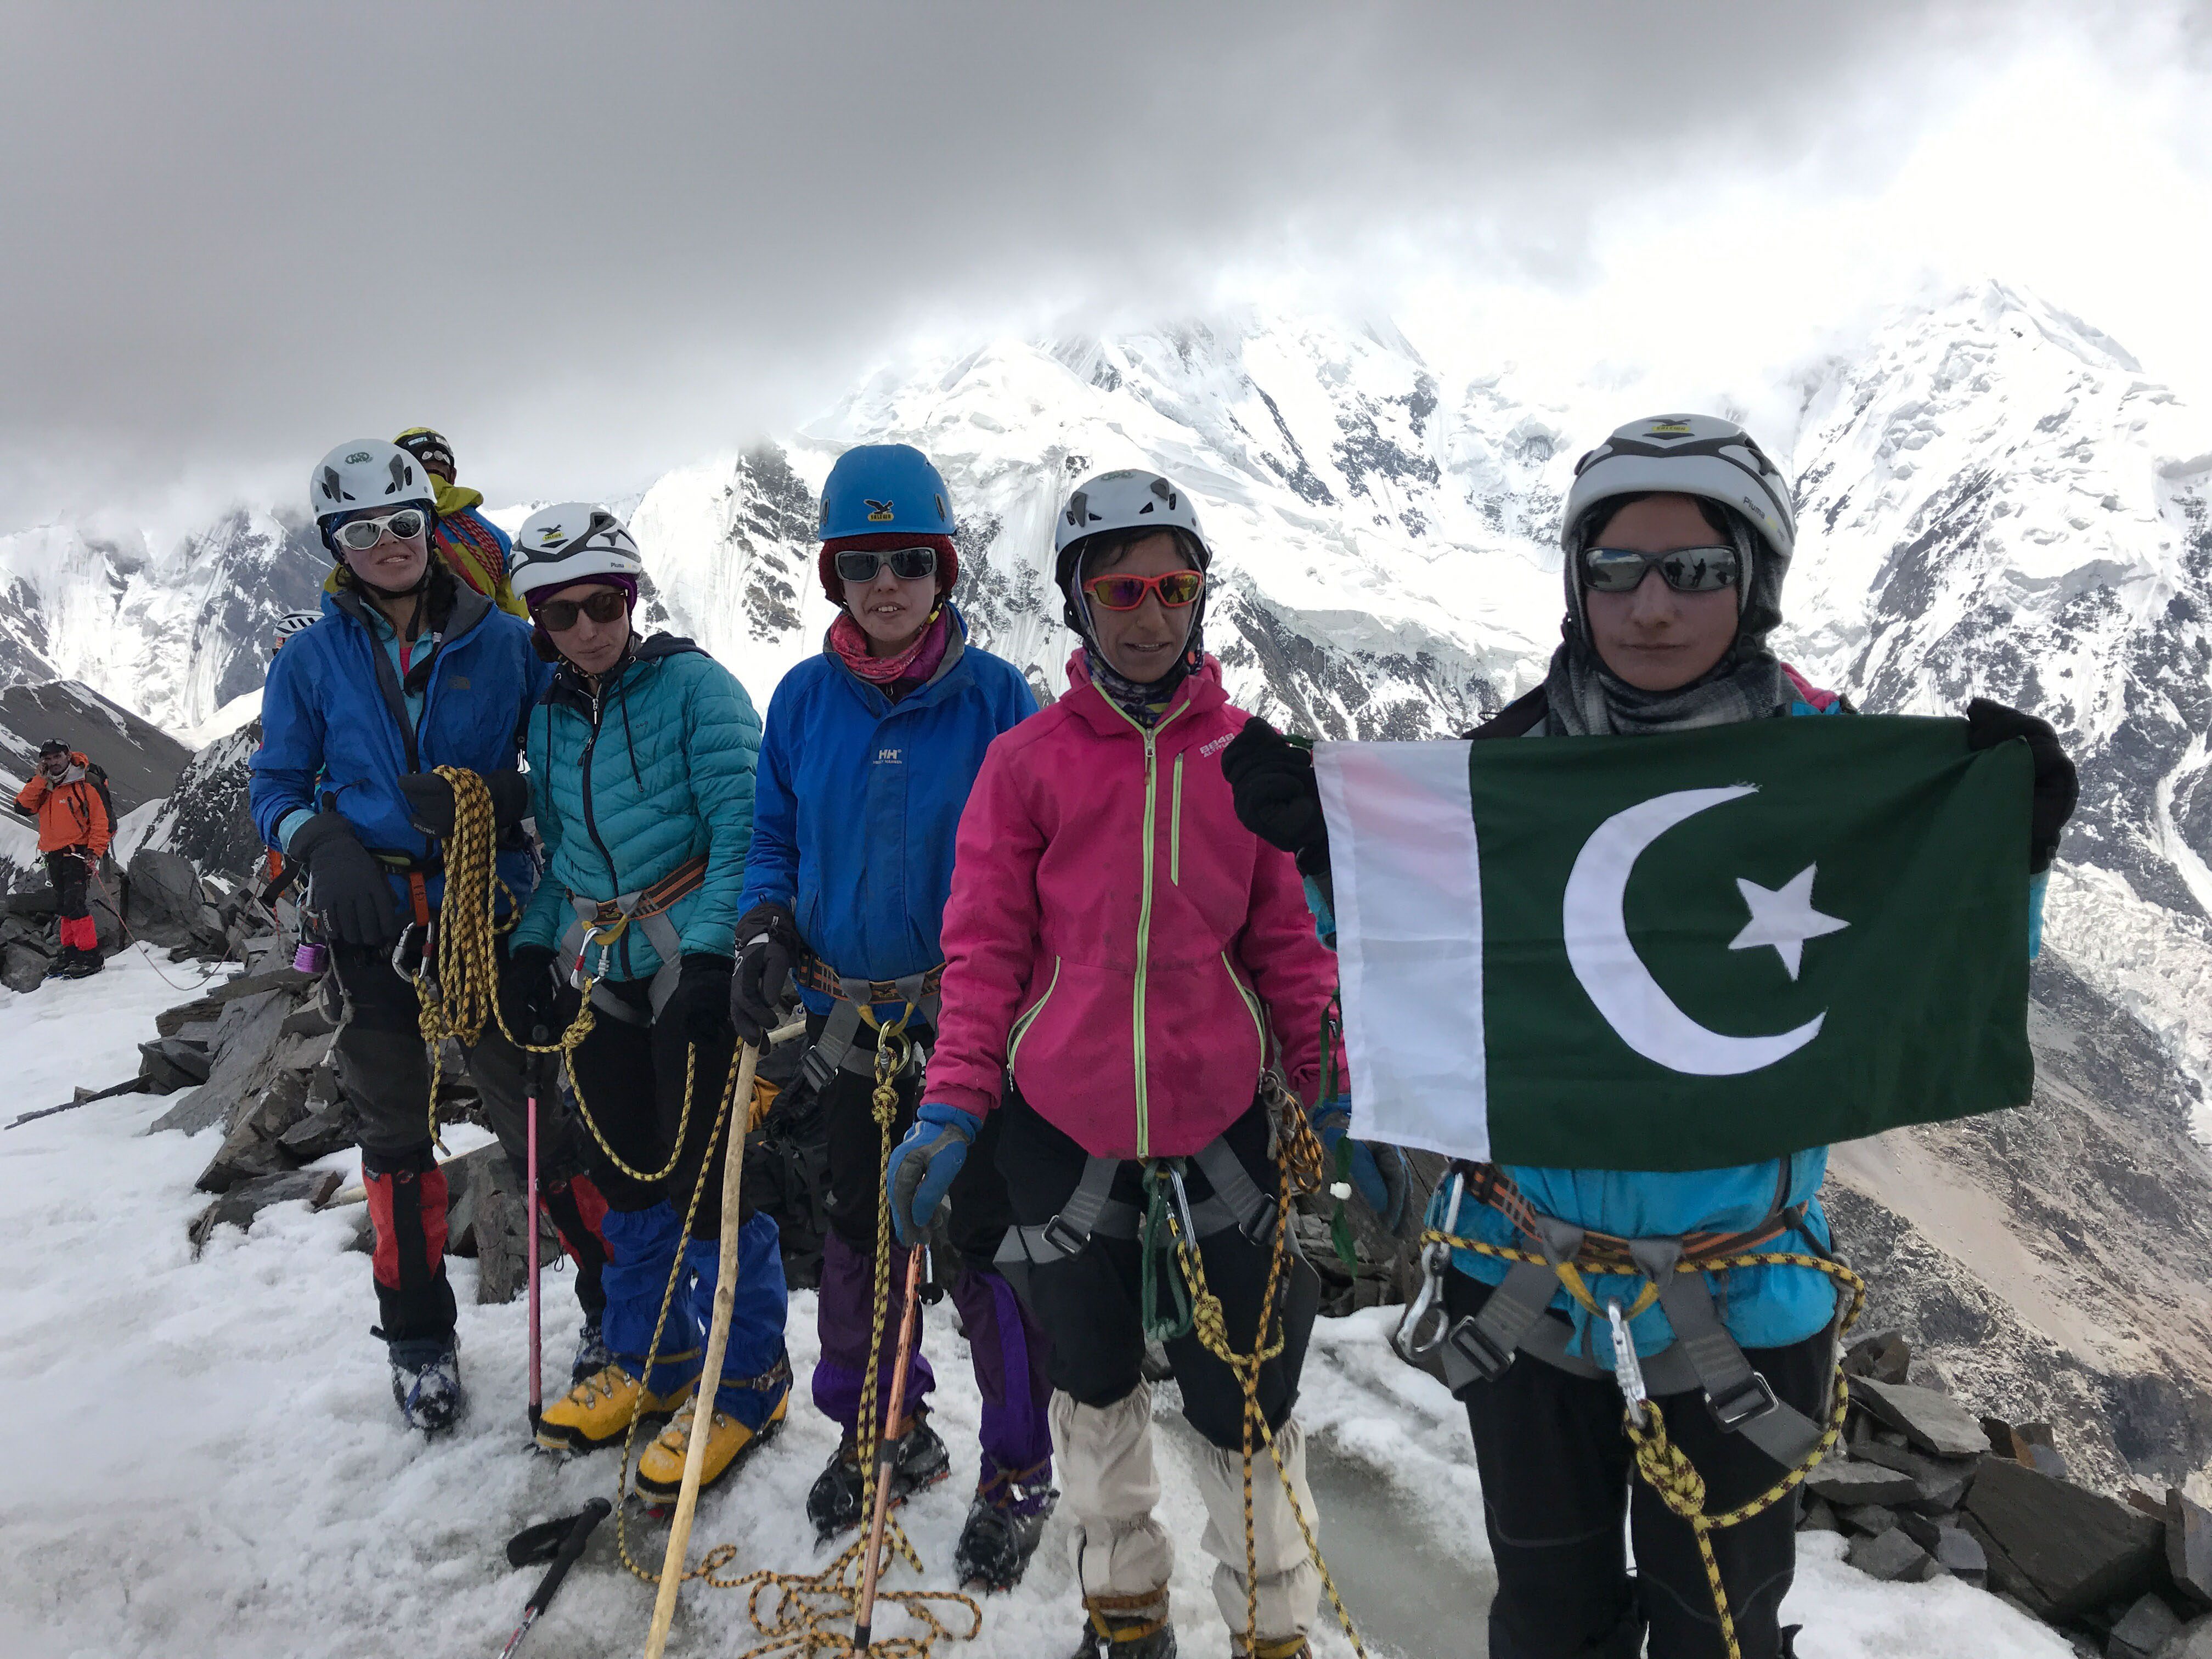 Töchter des Karakorums   Expedition in ein neues Leben